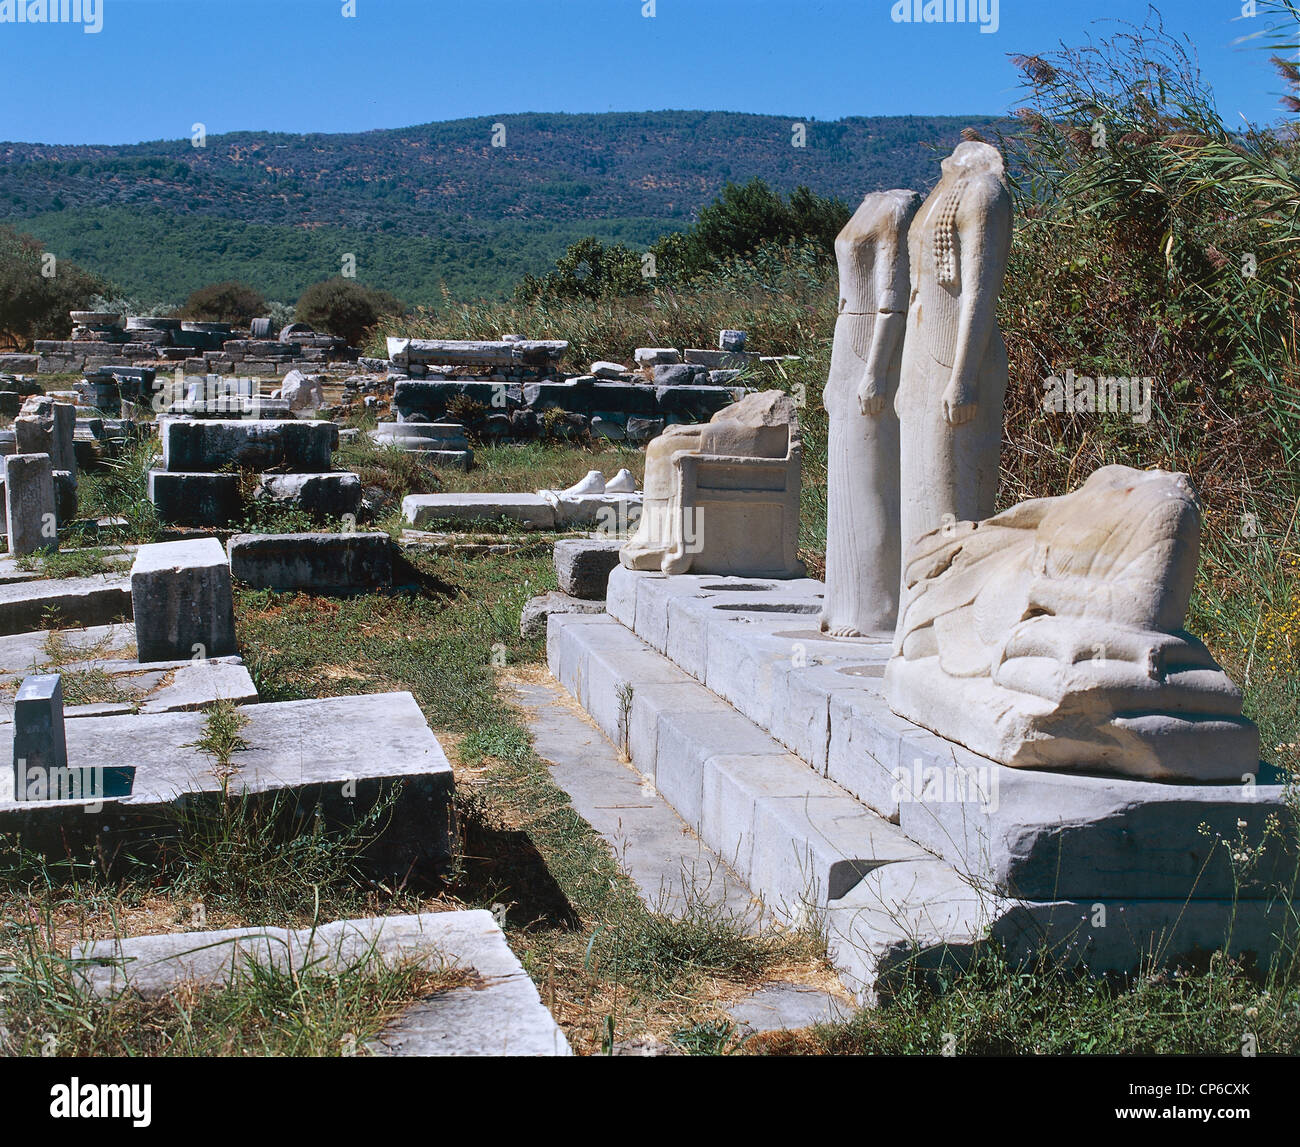 Griechenland - Ägäis - Insel Samos. Tempel der Hera. Rekonstruktion einer Szene zu Mitte des 6. Jahrhunderts v. Chr. zu bieten Stockfoto